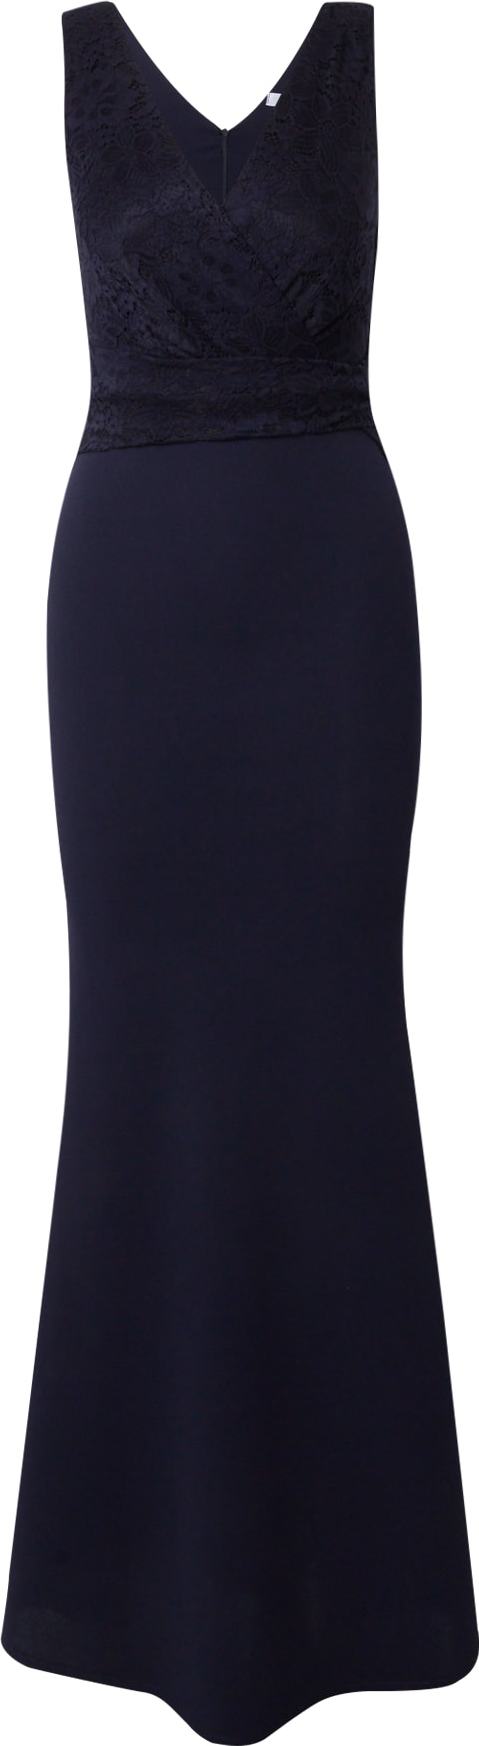 Společenské šaty 'BONNIE' WAL G. tmavě modrá